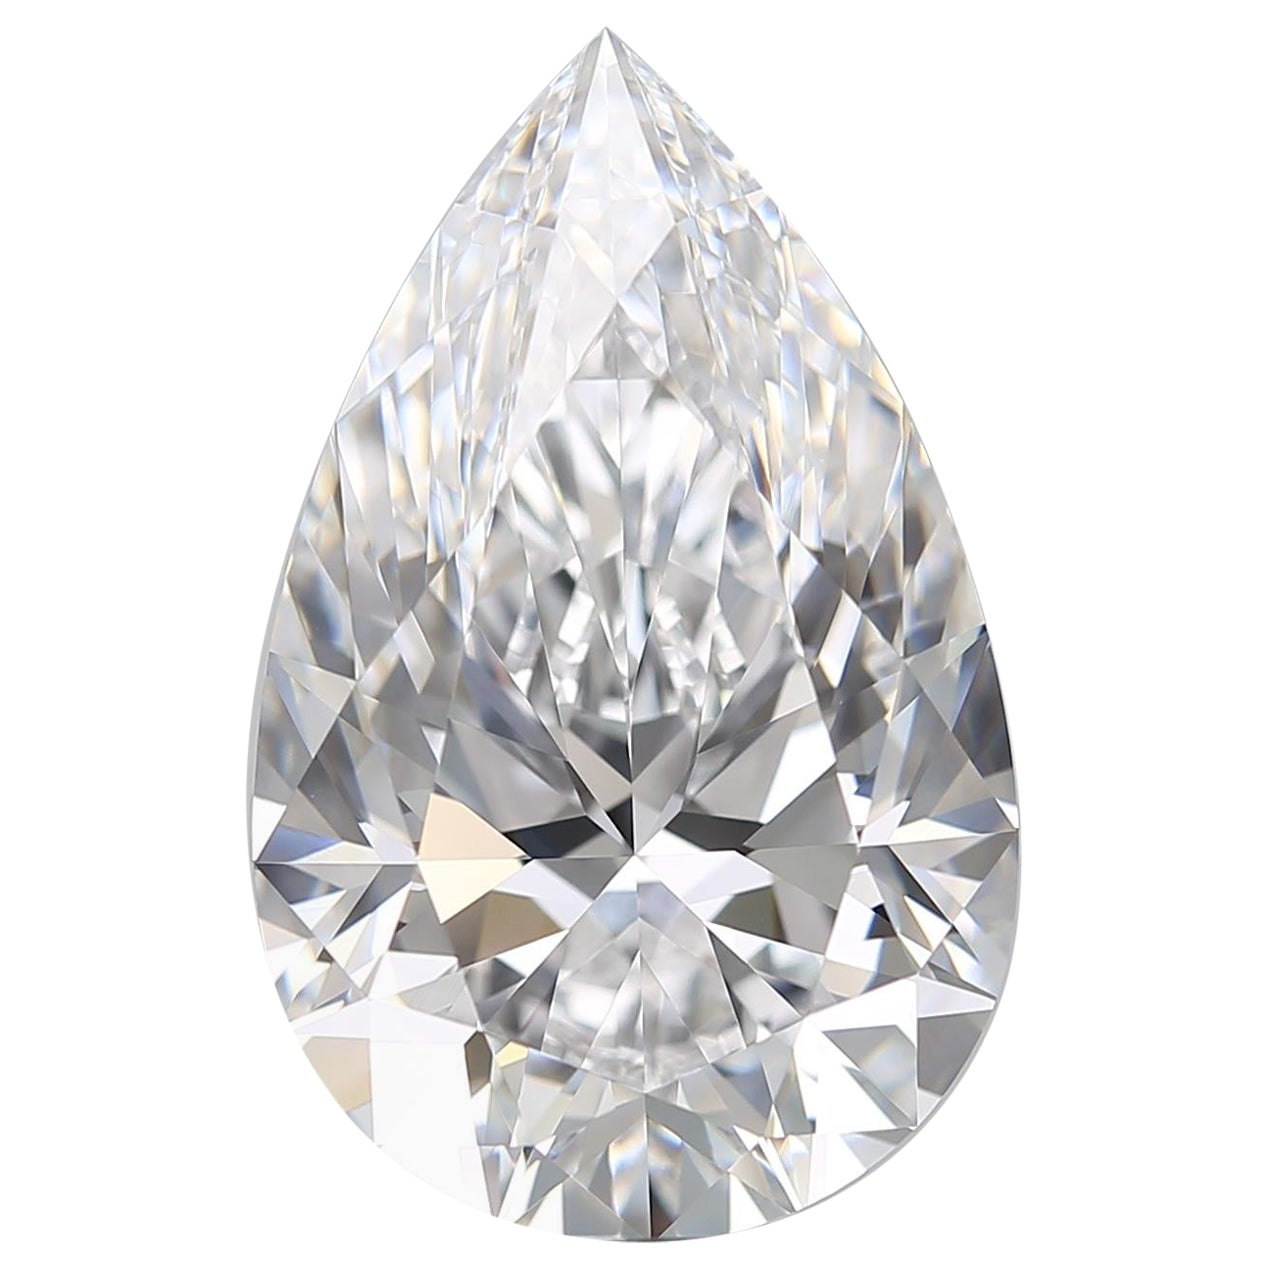 Golconda Type IIA GIA Certified Flawless D Color 8.09 Carat Pear Cut Diamond